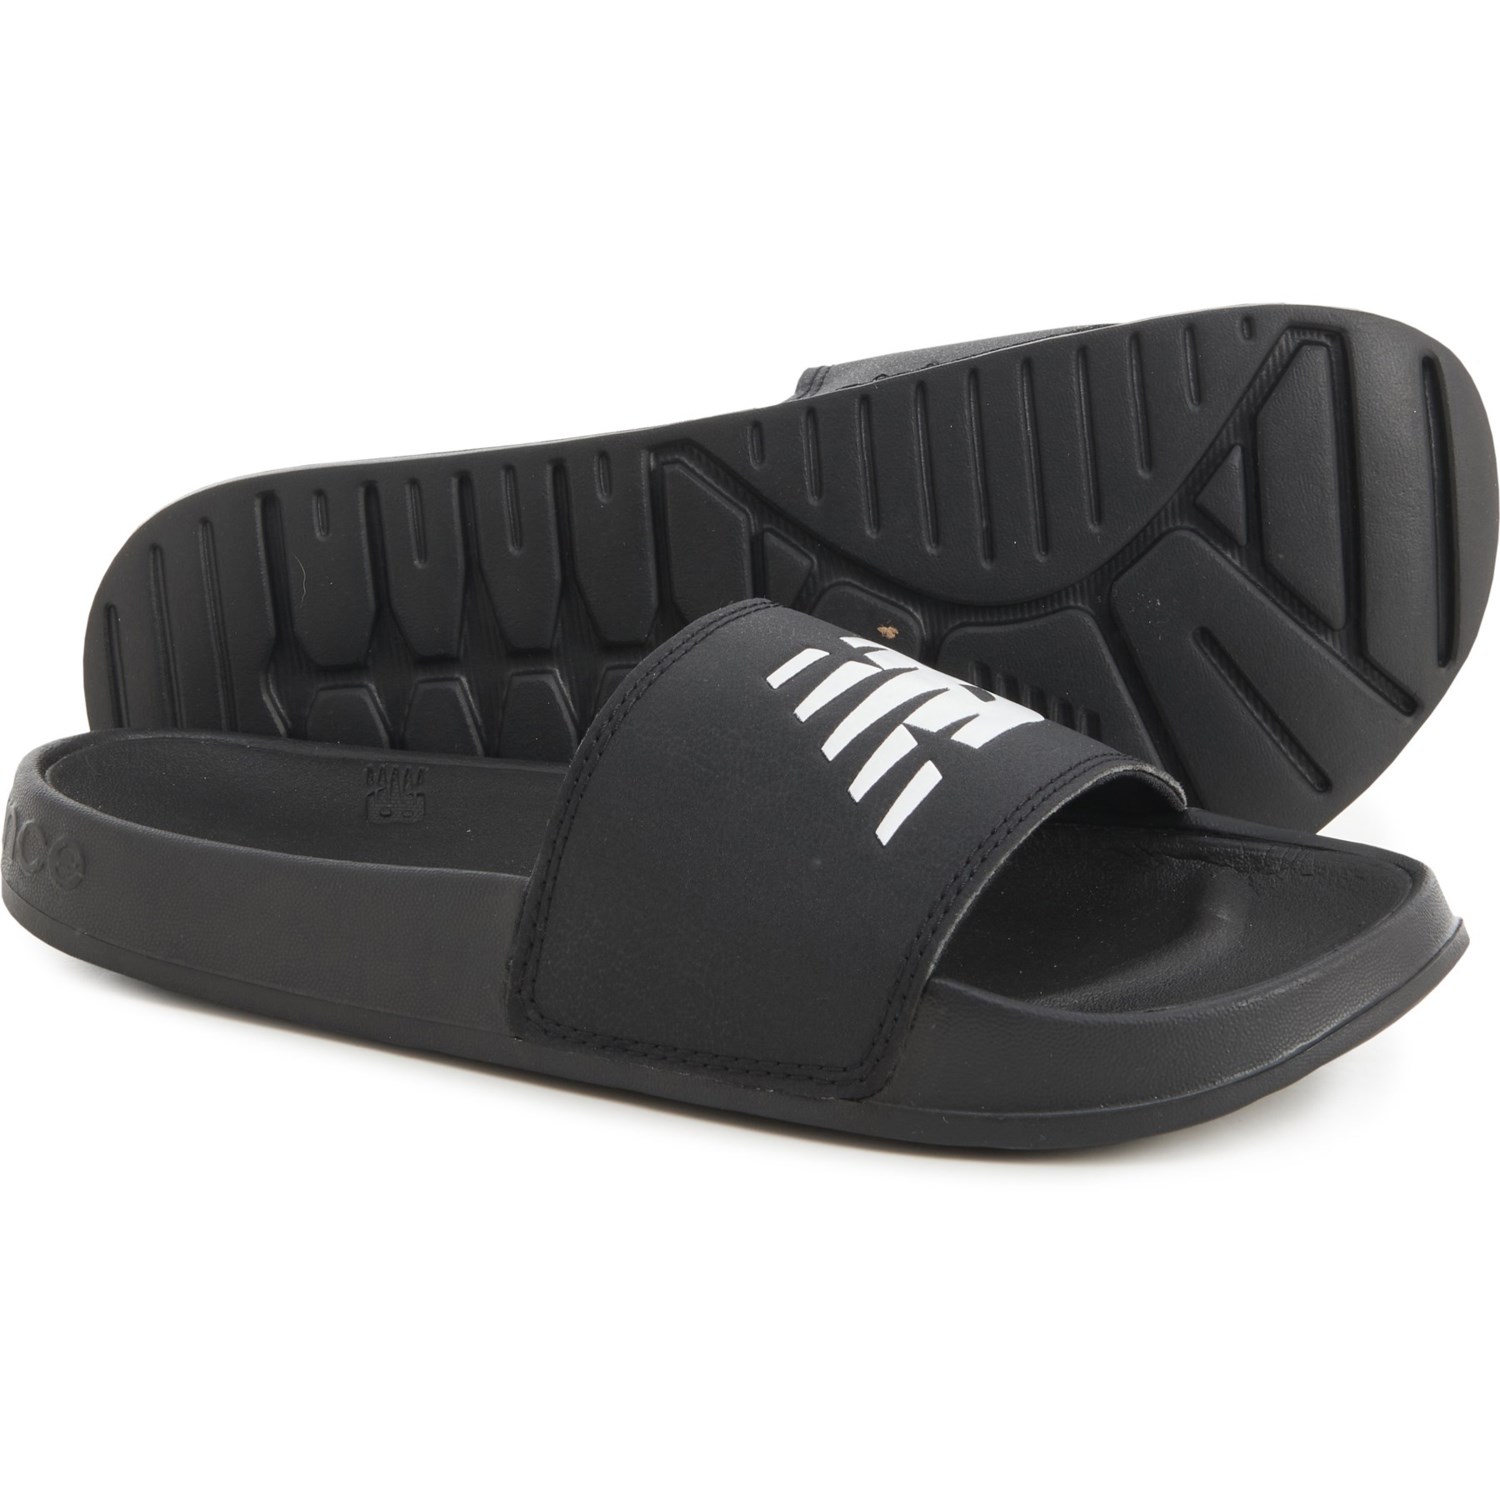 New Balance 200 V1 Sport Slide Sandals (For Women)